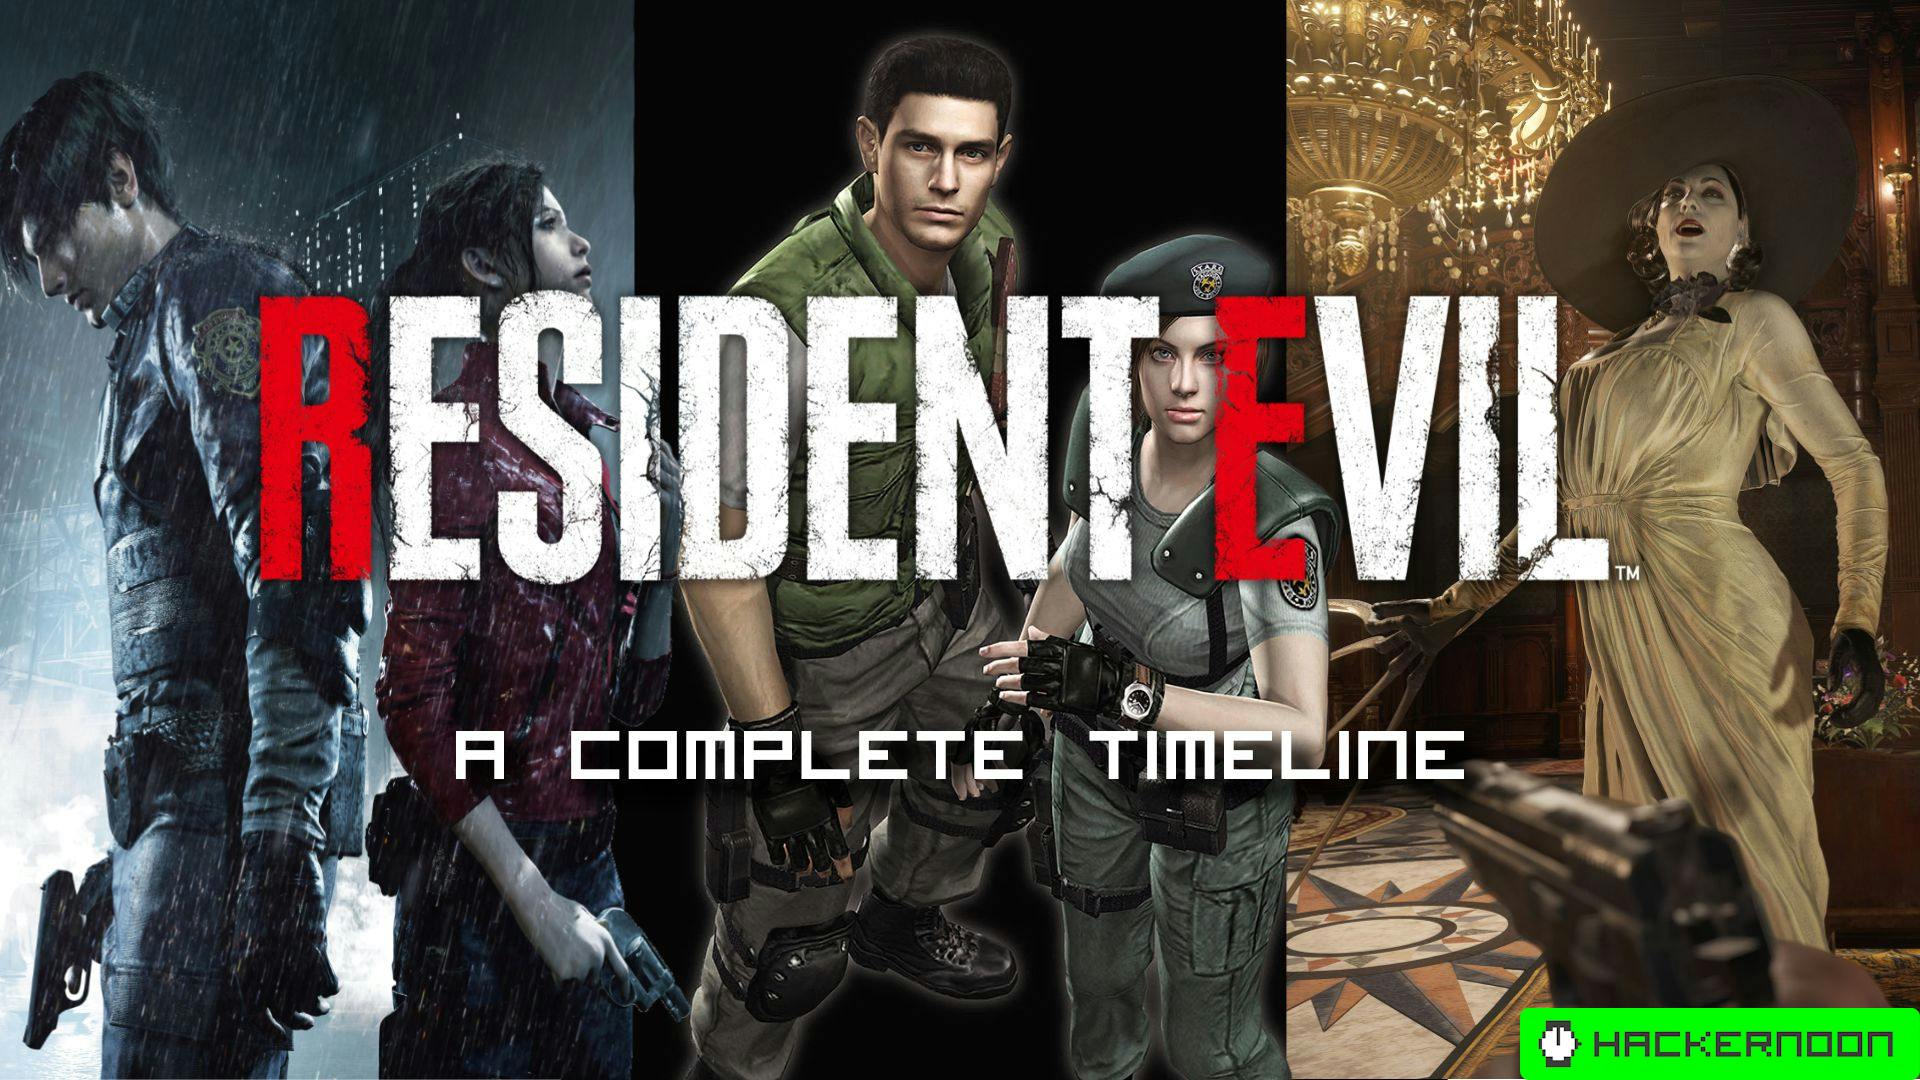 My unofficial Resident Evil timeline : r/residentevil